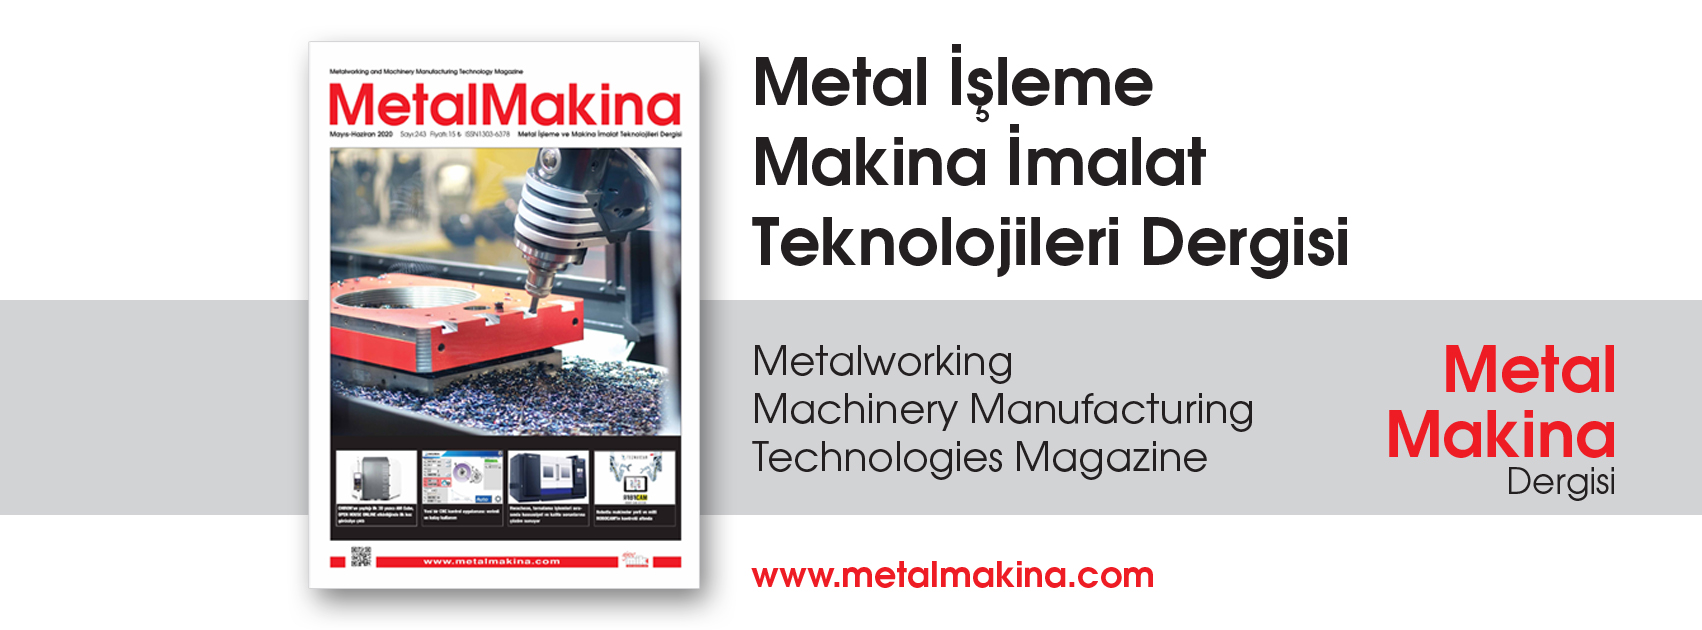 MetalMakina Dergisi